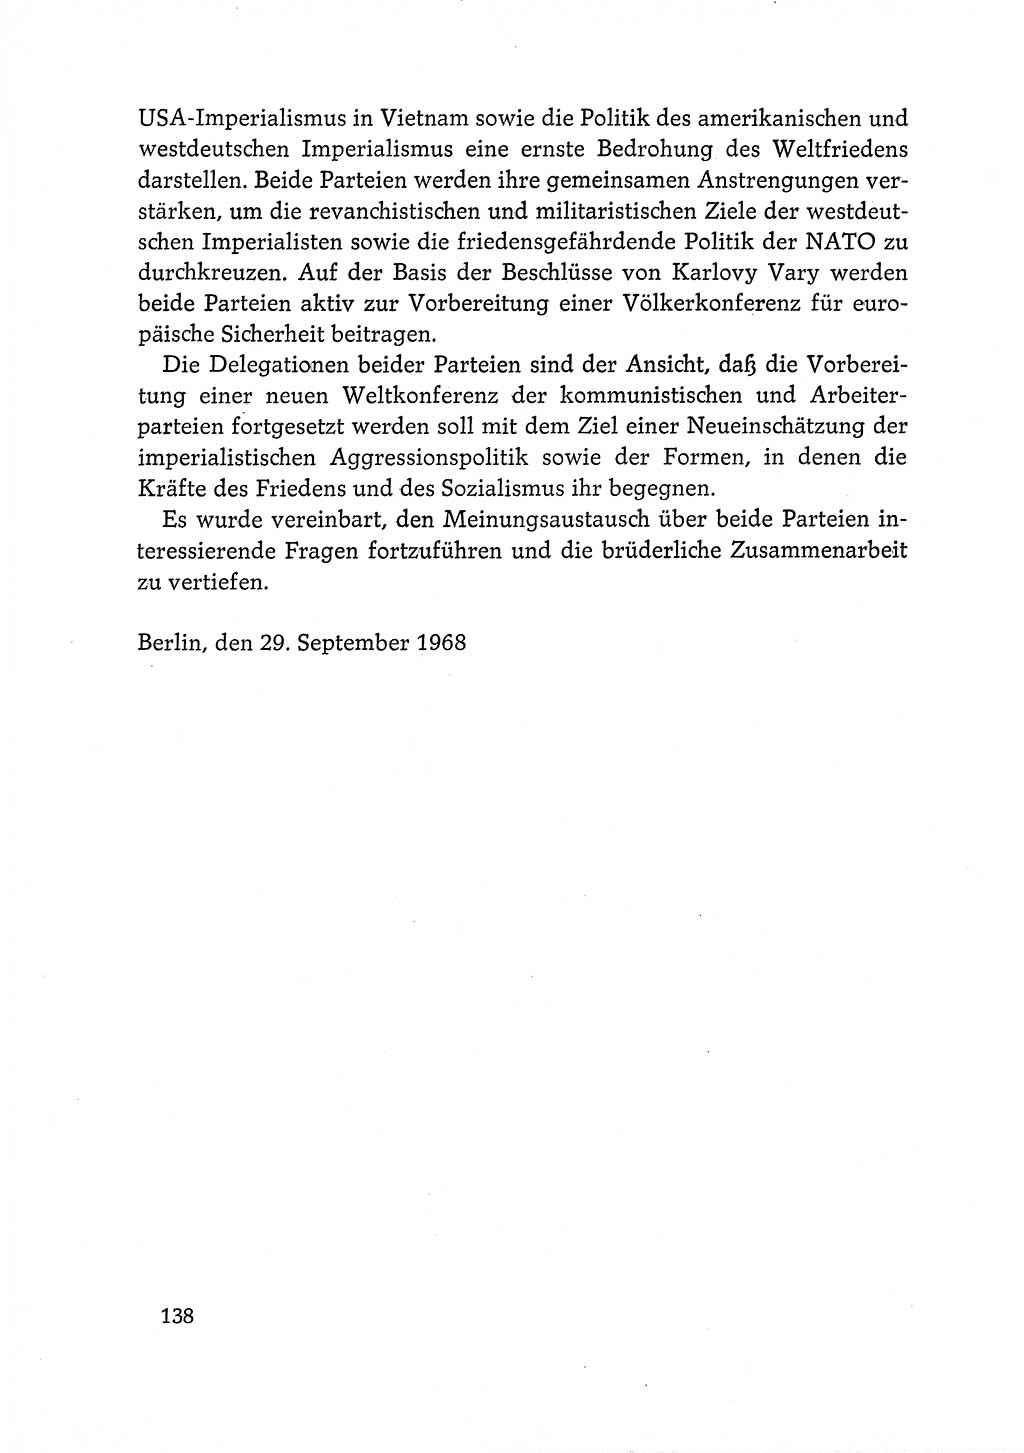 Dokumente der Sozialistischen Einheitspartei Deutschlands (SED) [Deutsche Demokratische Republik (DDR)] 1968-1969, Seite 138 (Dok. SED DDR 1968-1969, S. 138)